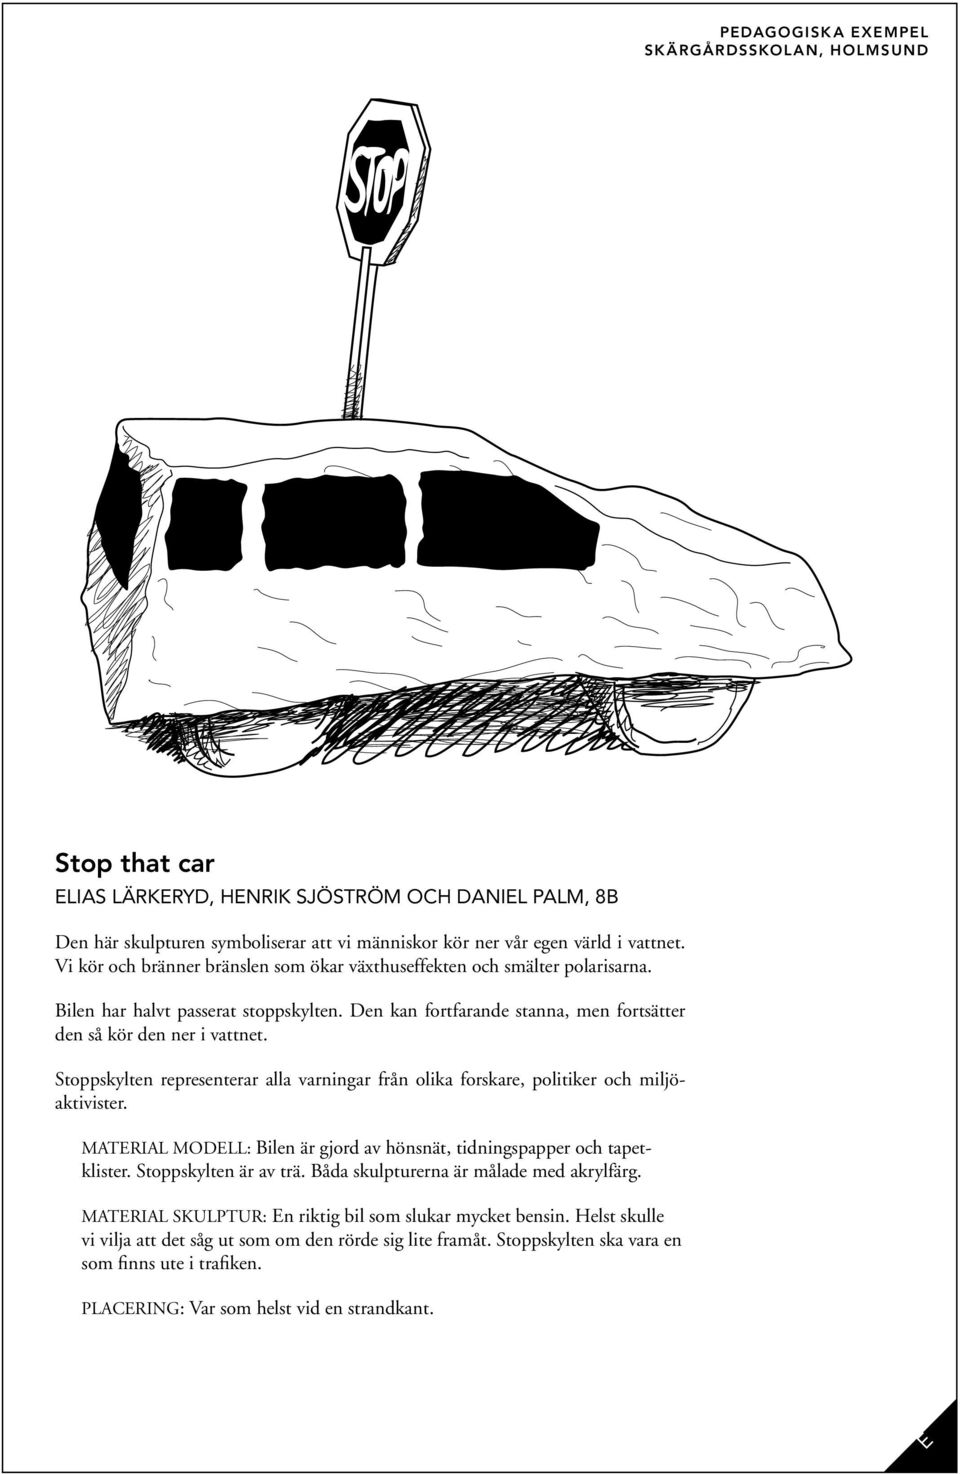 Stoppskylten representerar alla varningar från olika forskare, politiker och miljöaktivister. Material modell: Bilen är gjord av hönsnät, tidningspapper och tapetklister. Stoppskylten är av trä.